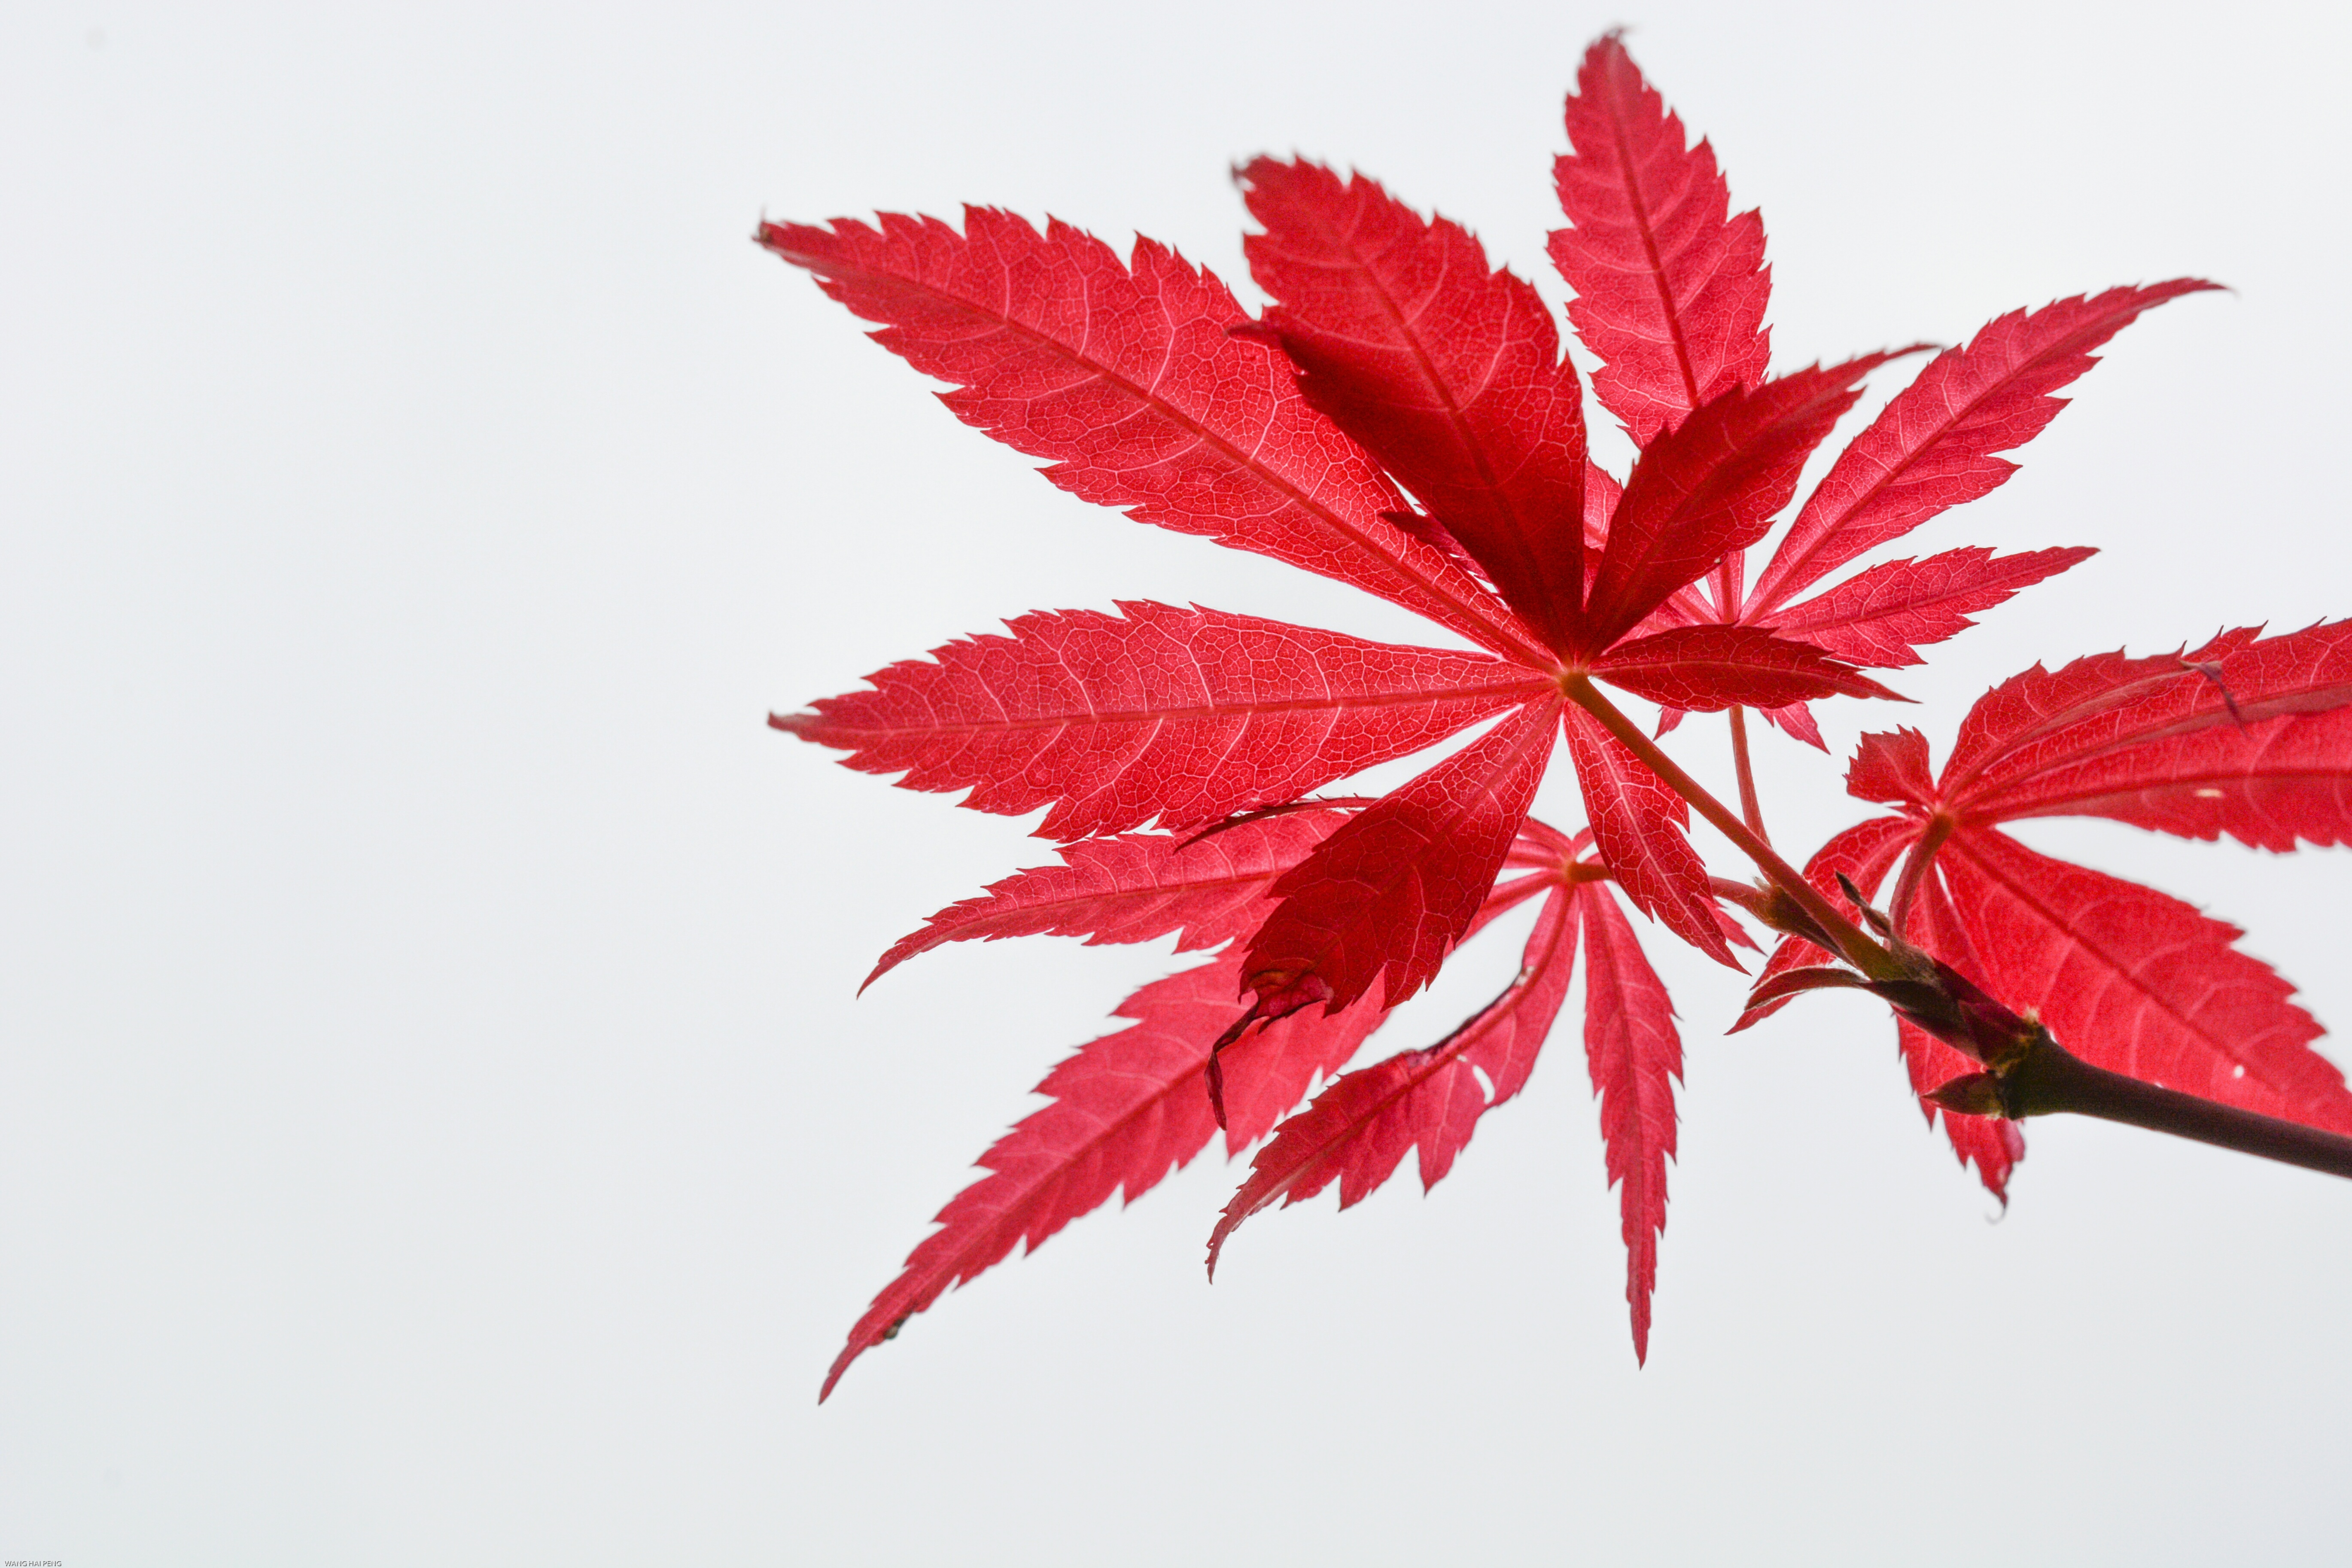 秋天的树叶为什么会变色？——秋红是树叶在老化过程呈现给我们的美丽！_糖分